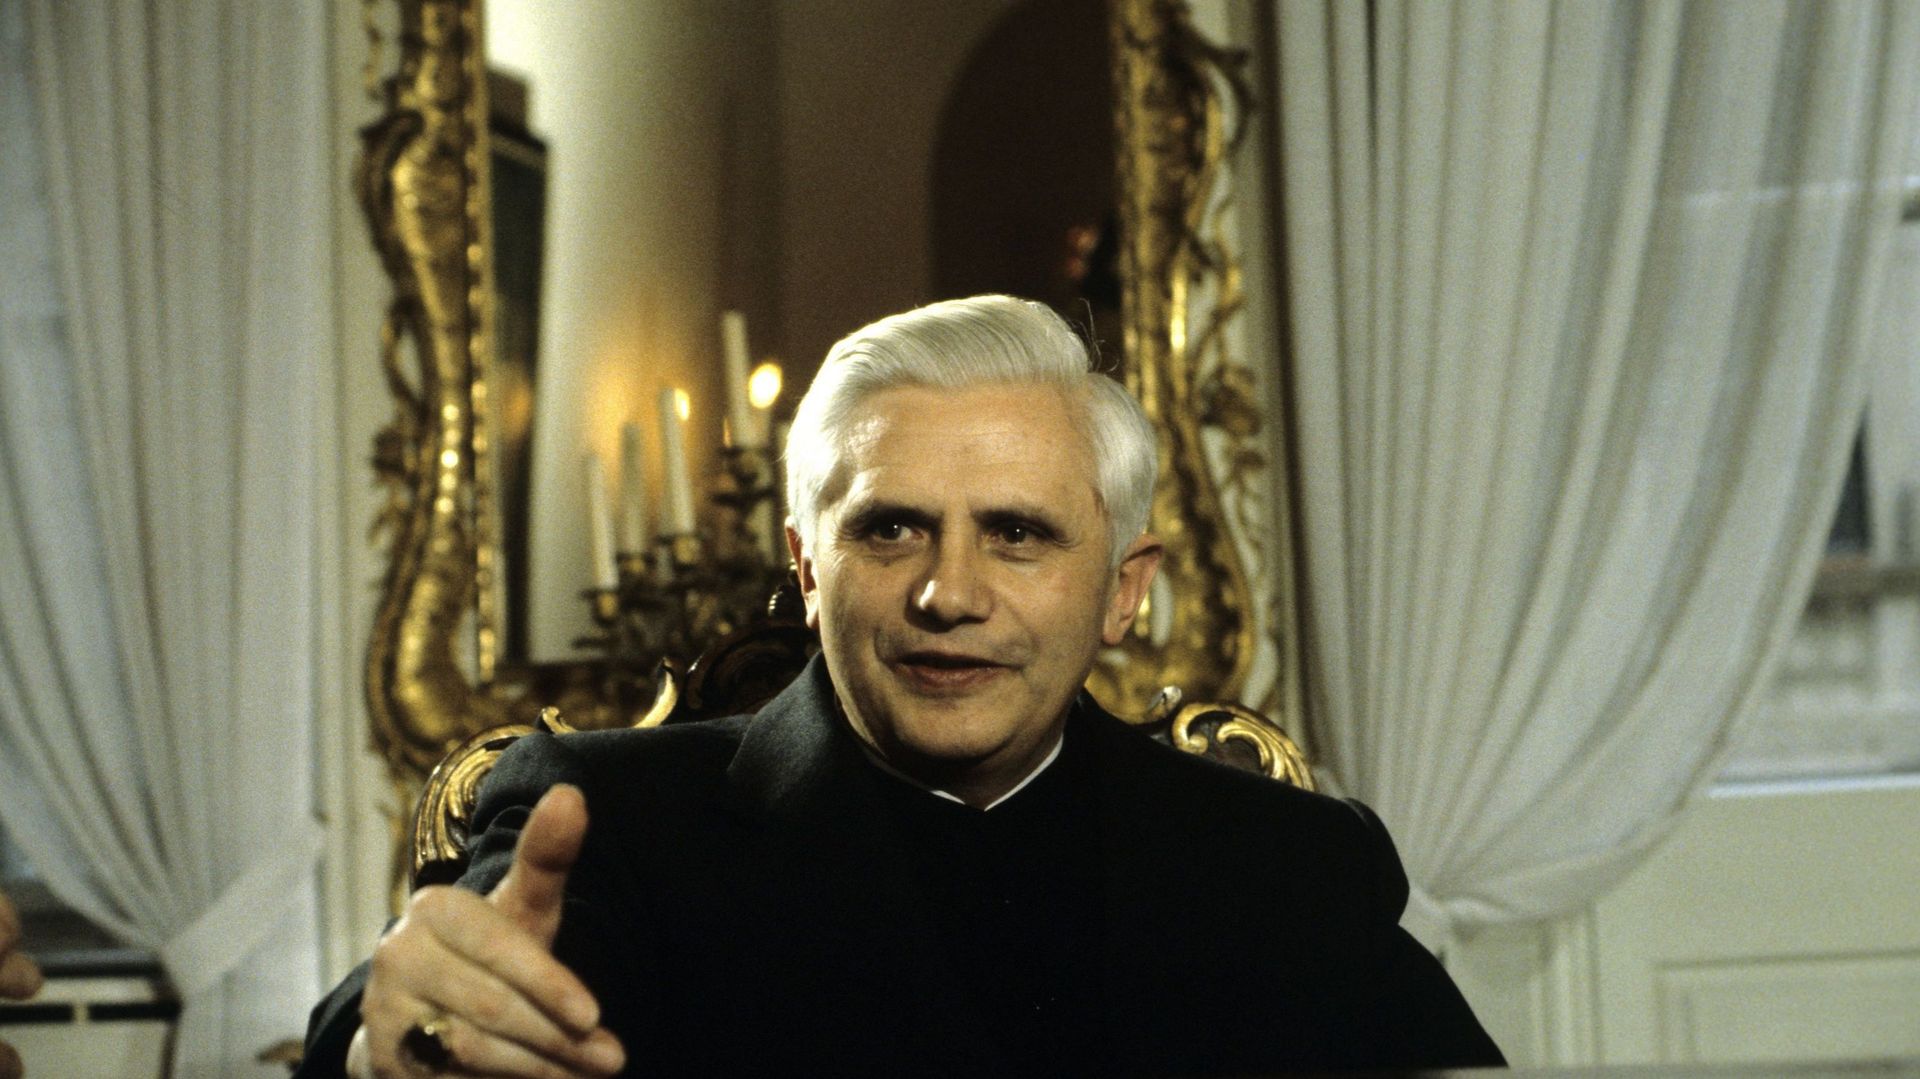 L’archevêque de Munich lors d’une interview dans son palais à Munich – 1980